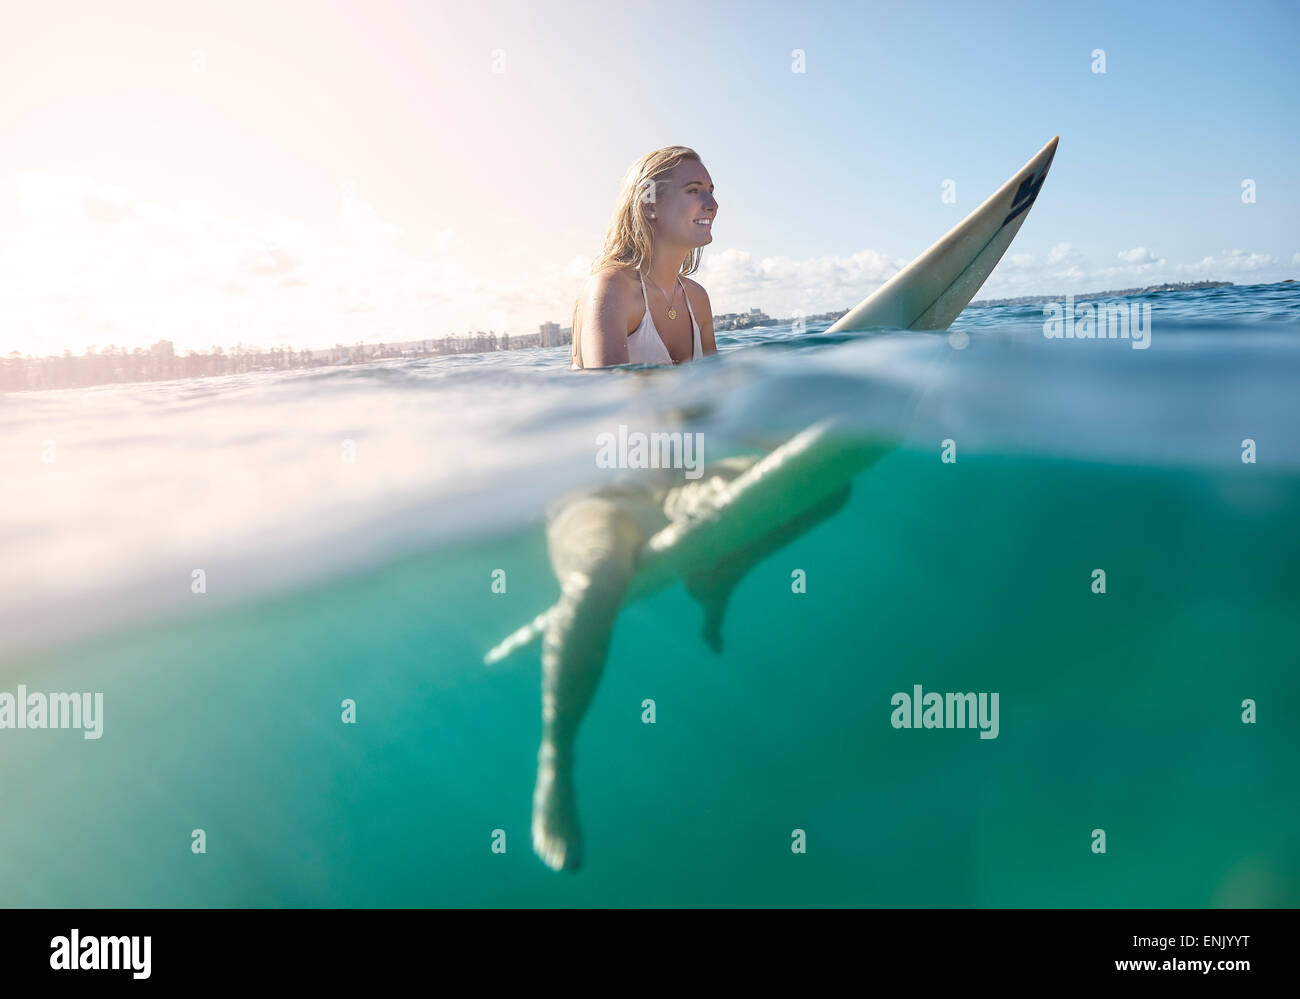 Chica de surfboard, New South Wales, Australia, el Pacífico Foto de stock